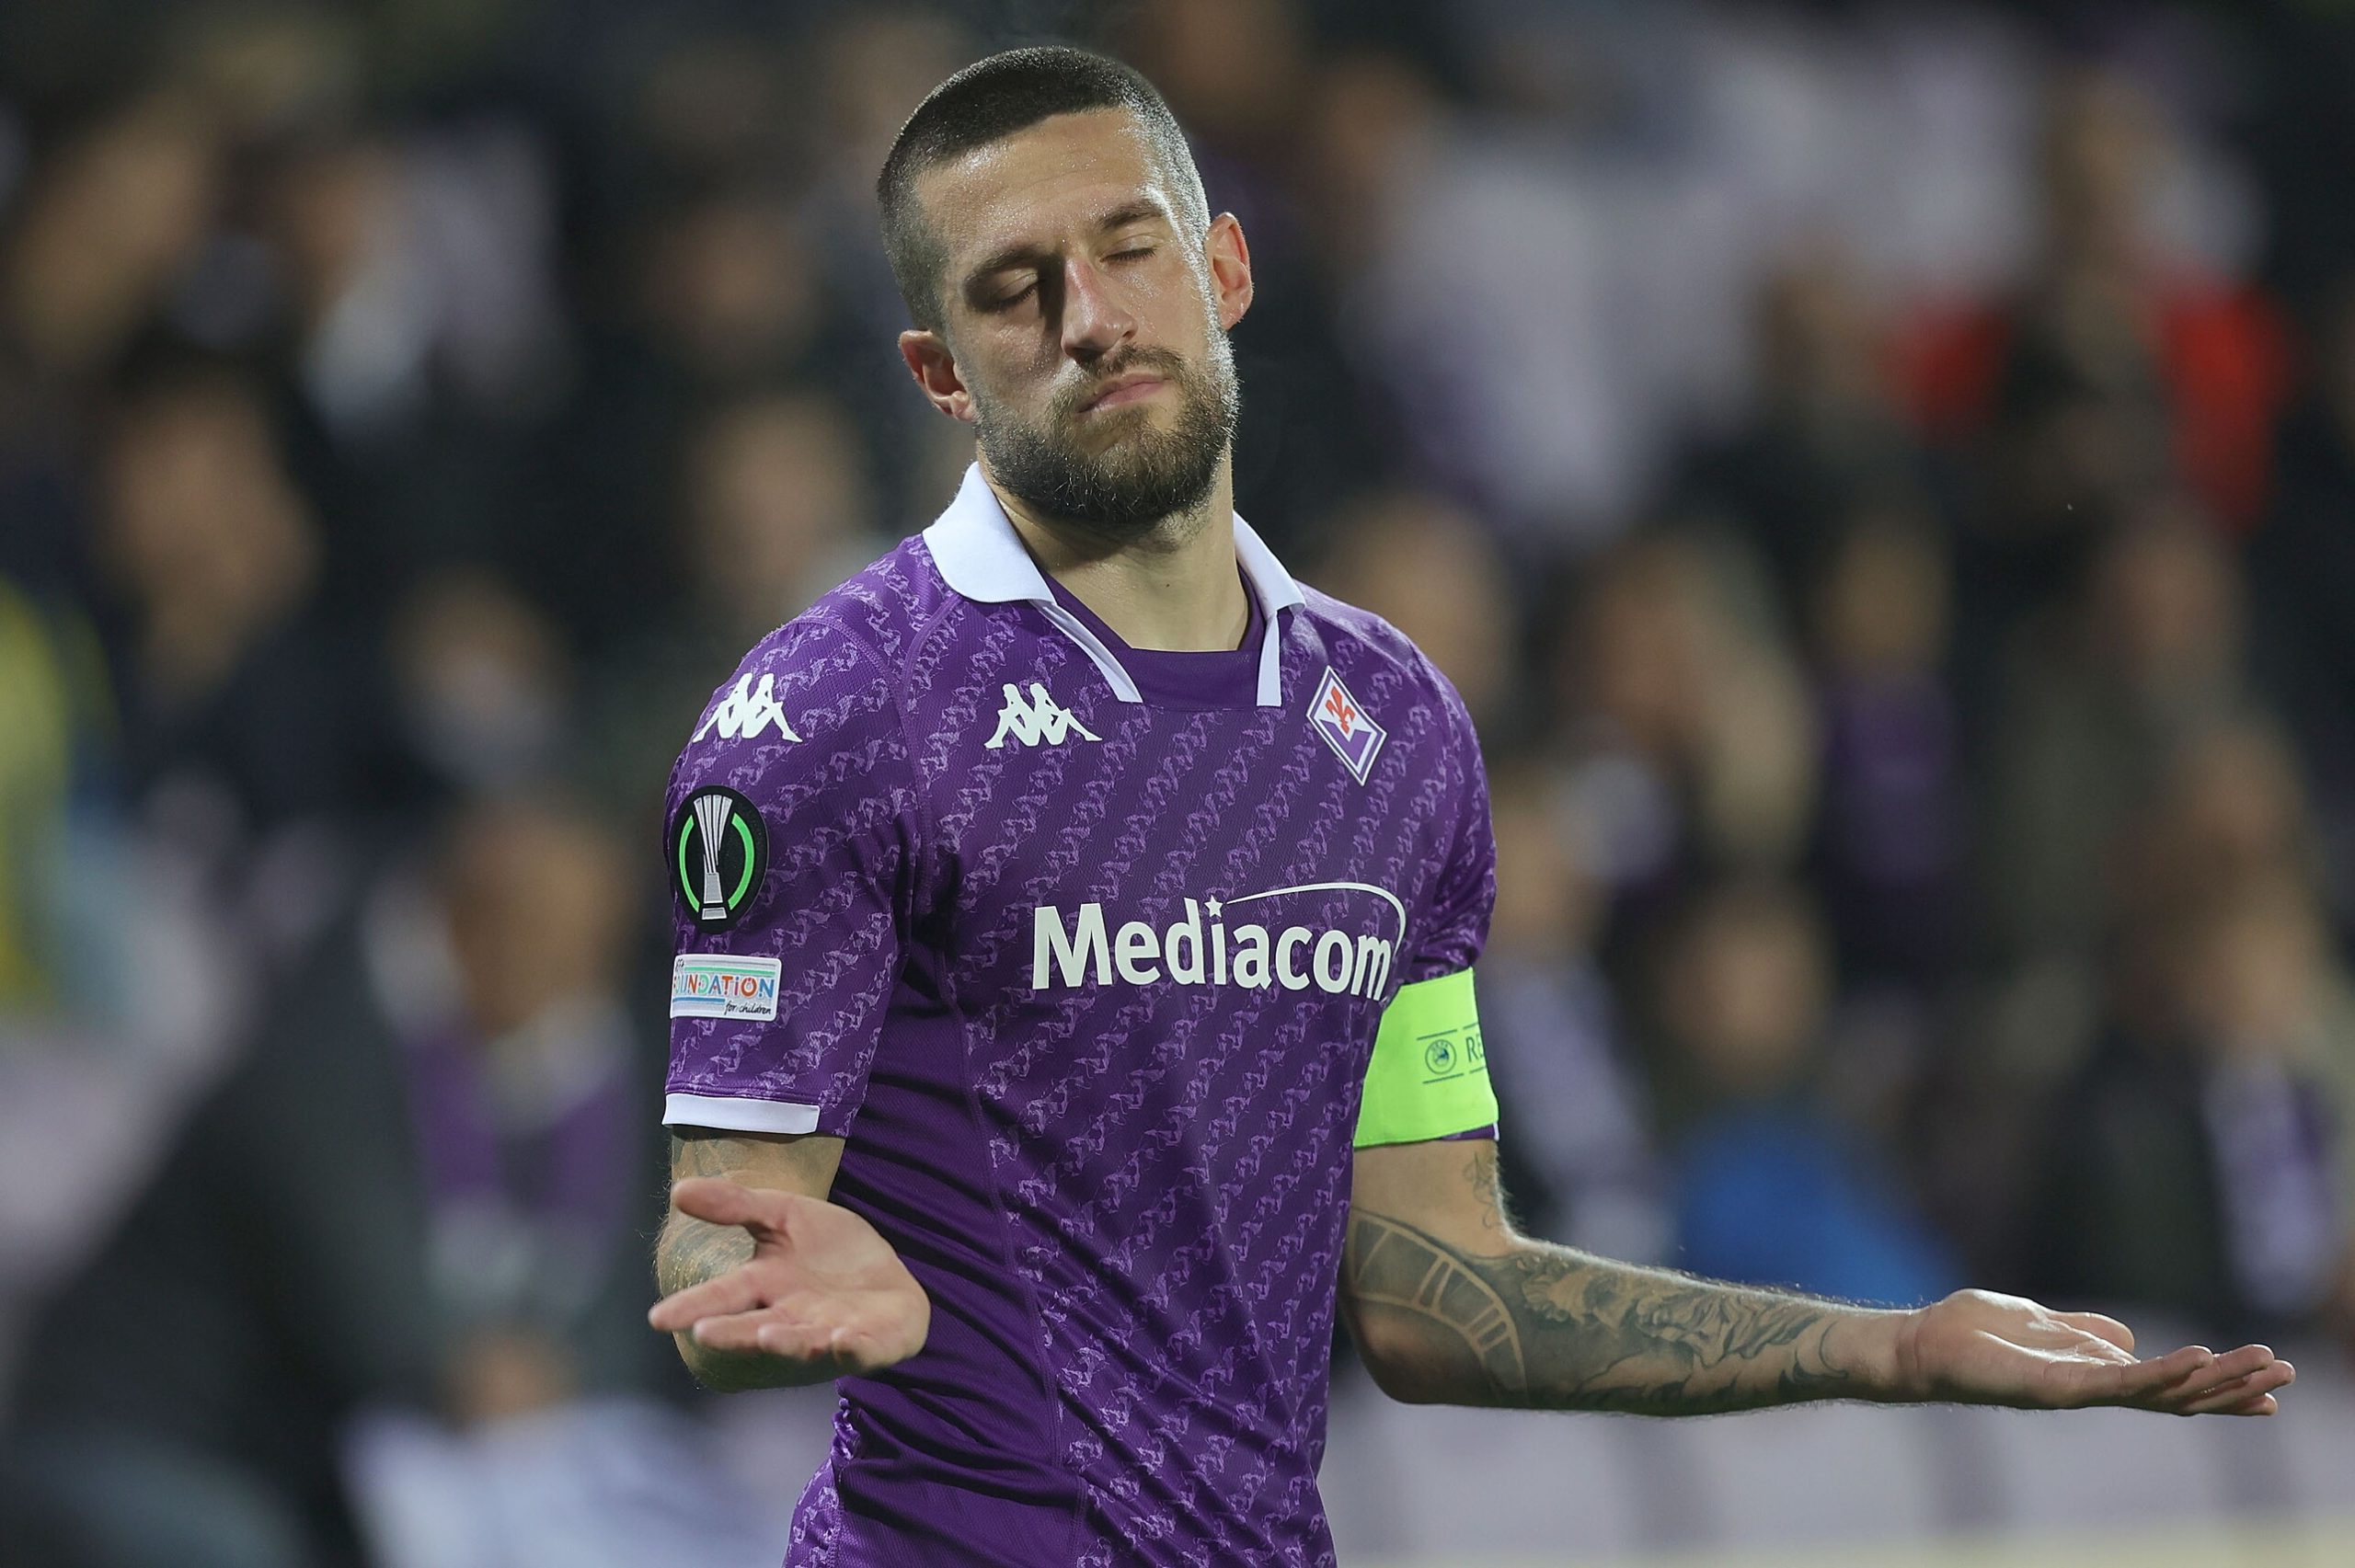 Moviola Gazzetta: “Disastroso Kooij, manca un rigore per la Fiorentina e due rossi per il Genk”